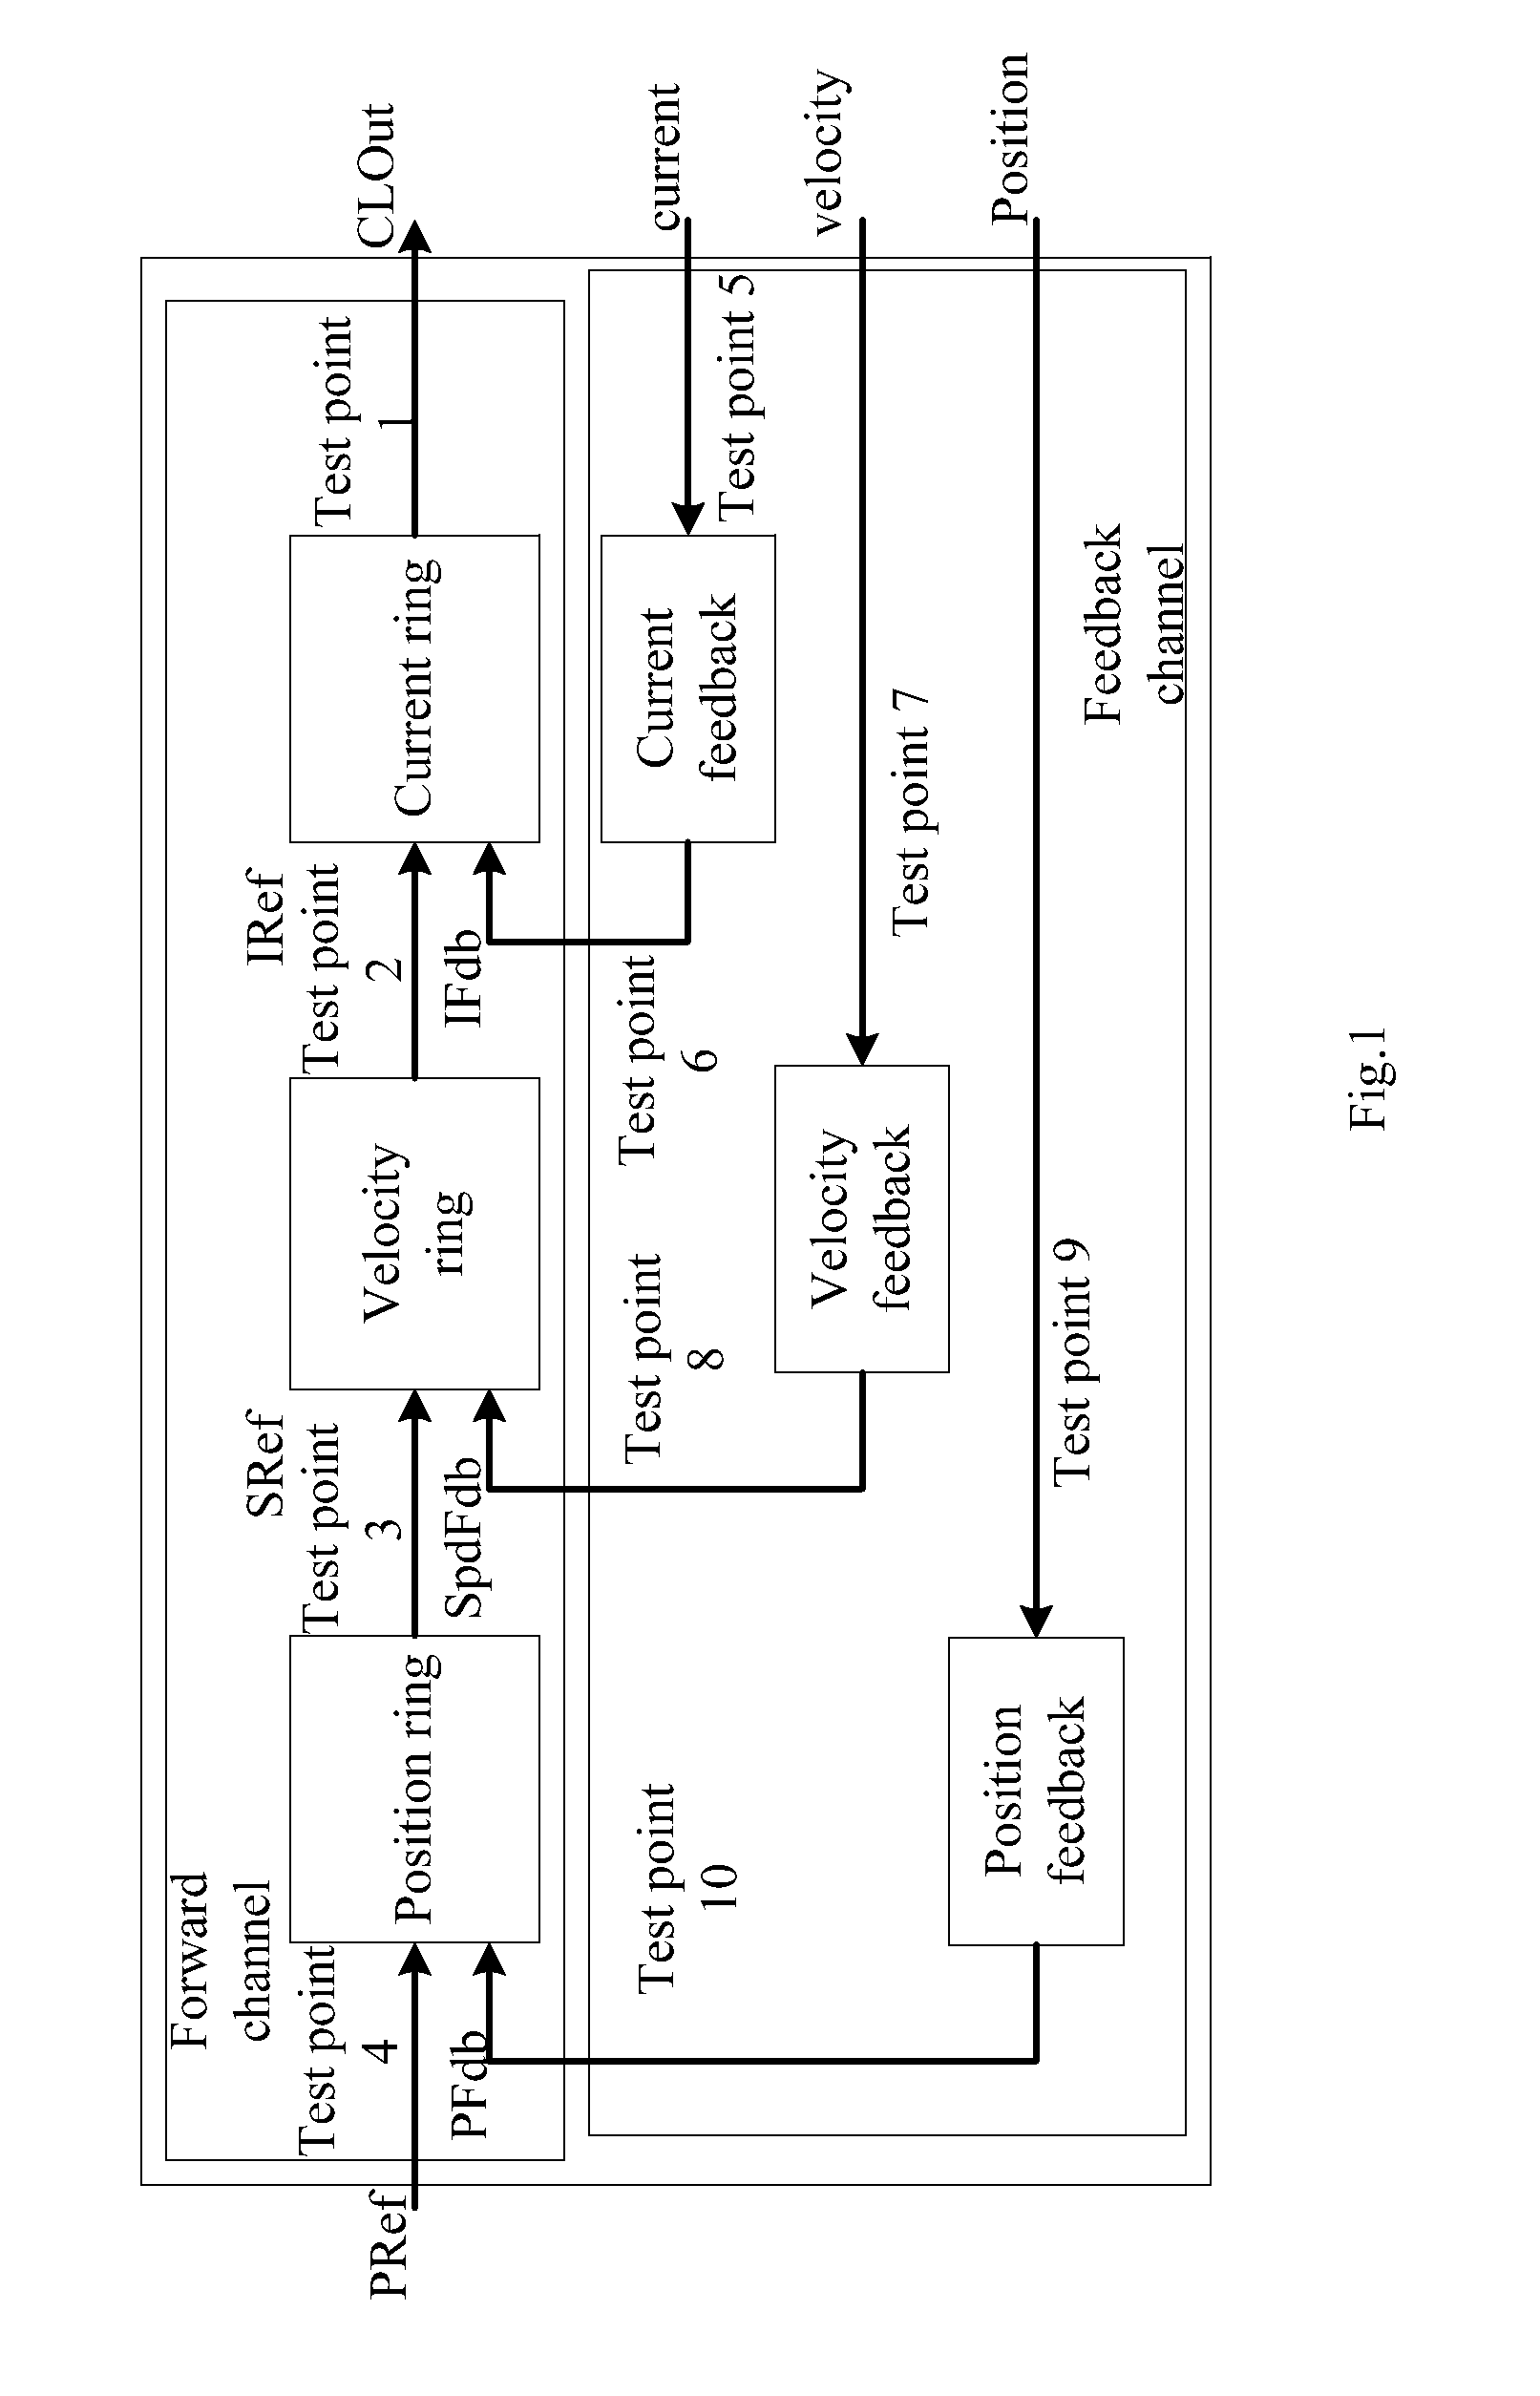 Control System of Multi-Shaft Servo Motor